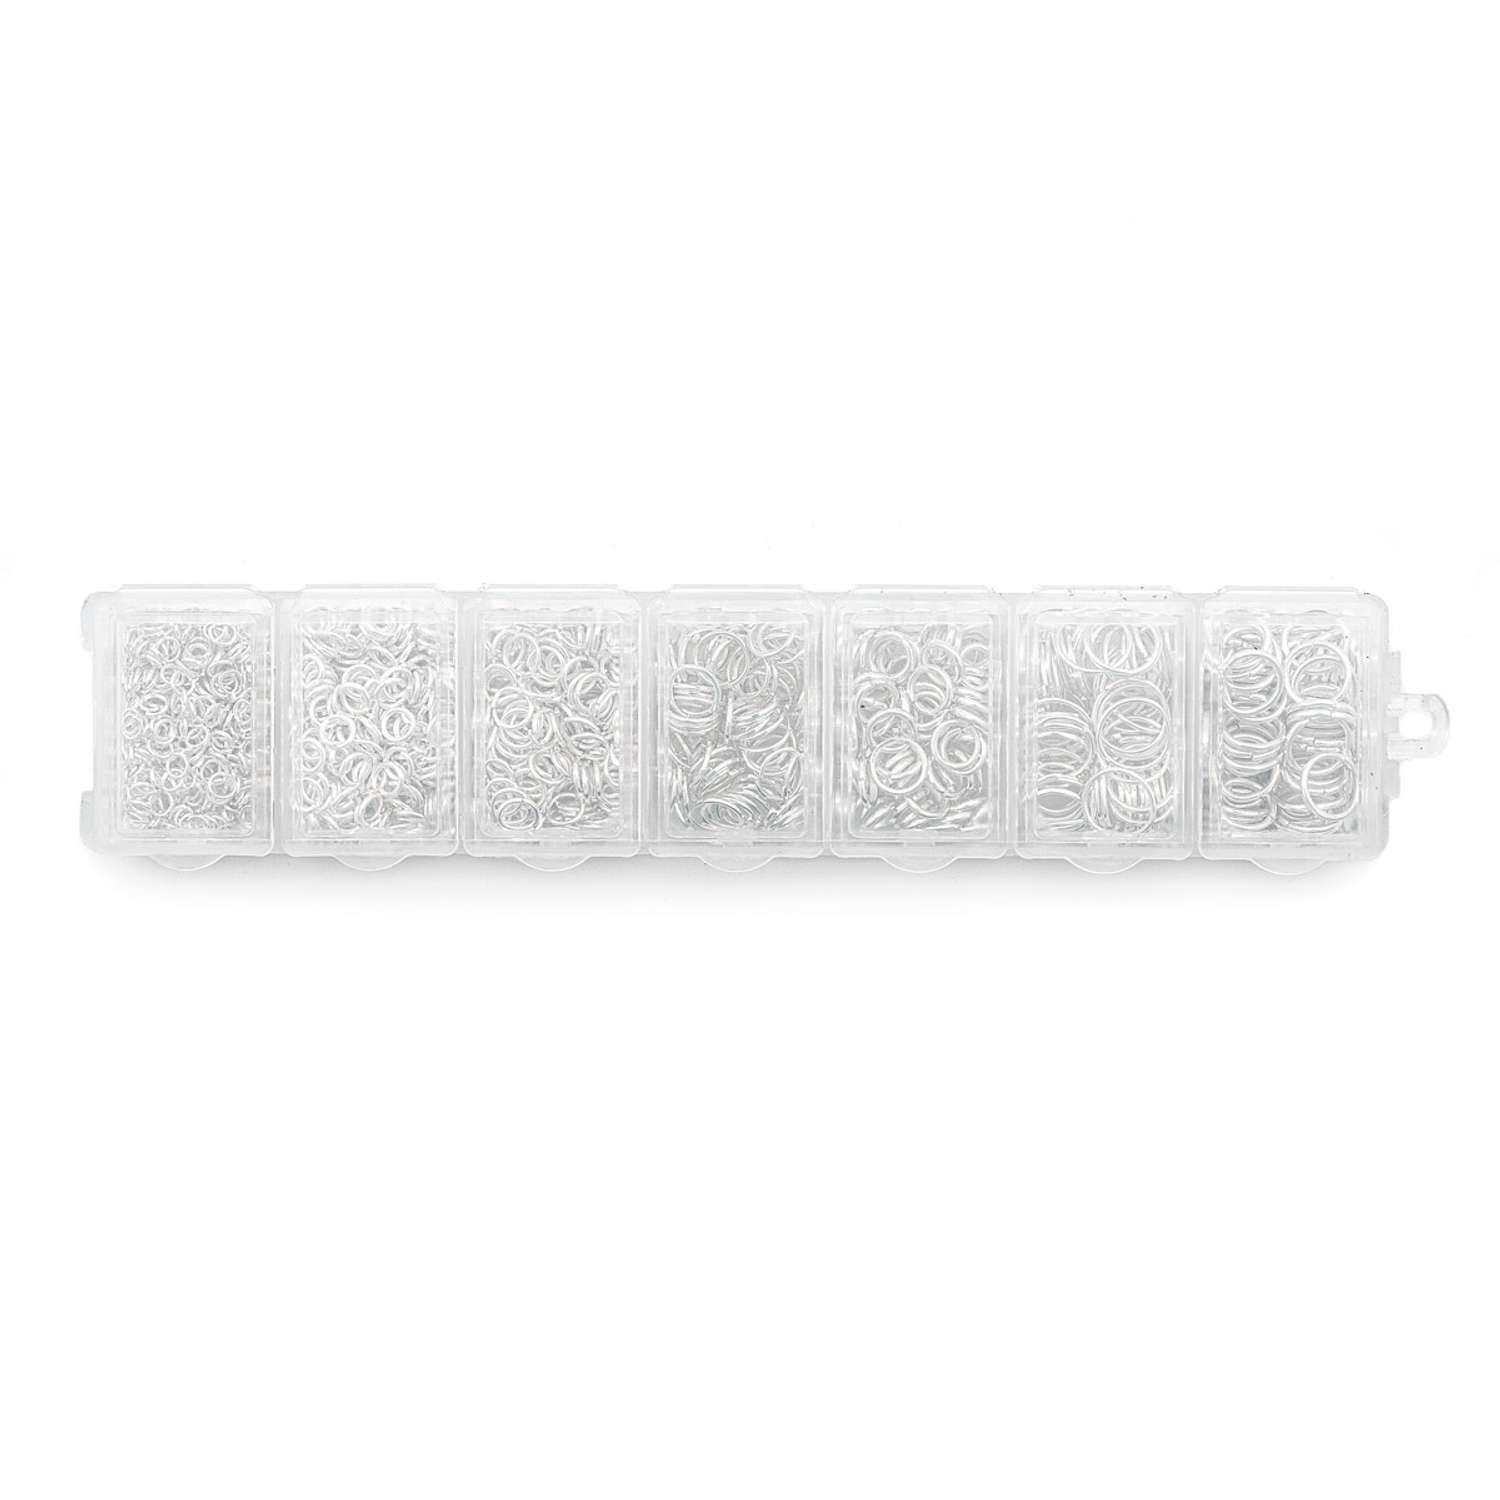 Фурнитура для бижутерии Astra Craft соединительные кольца набор цвет серебро - фото 3